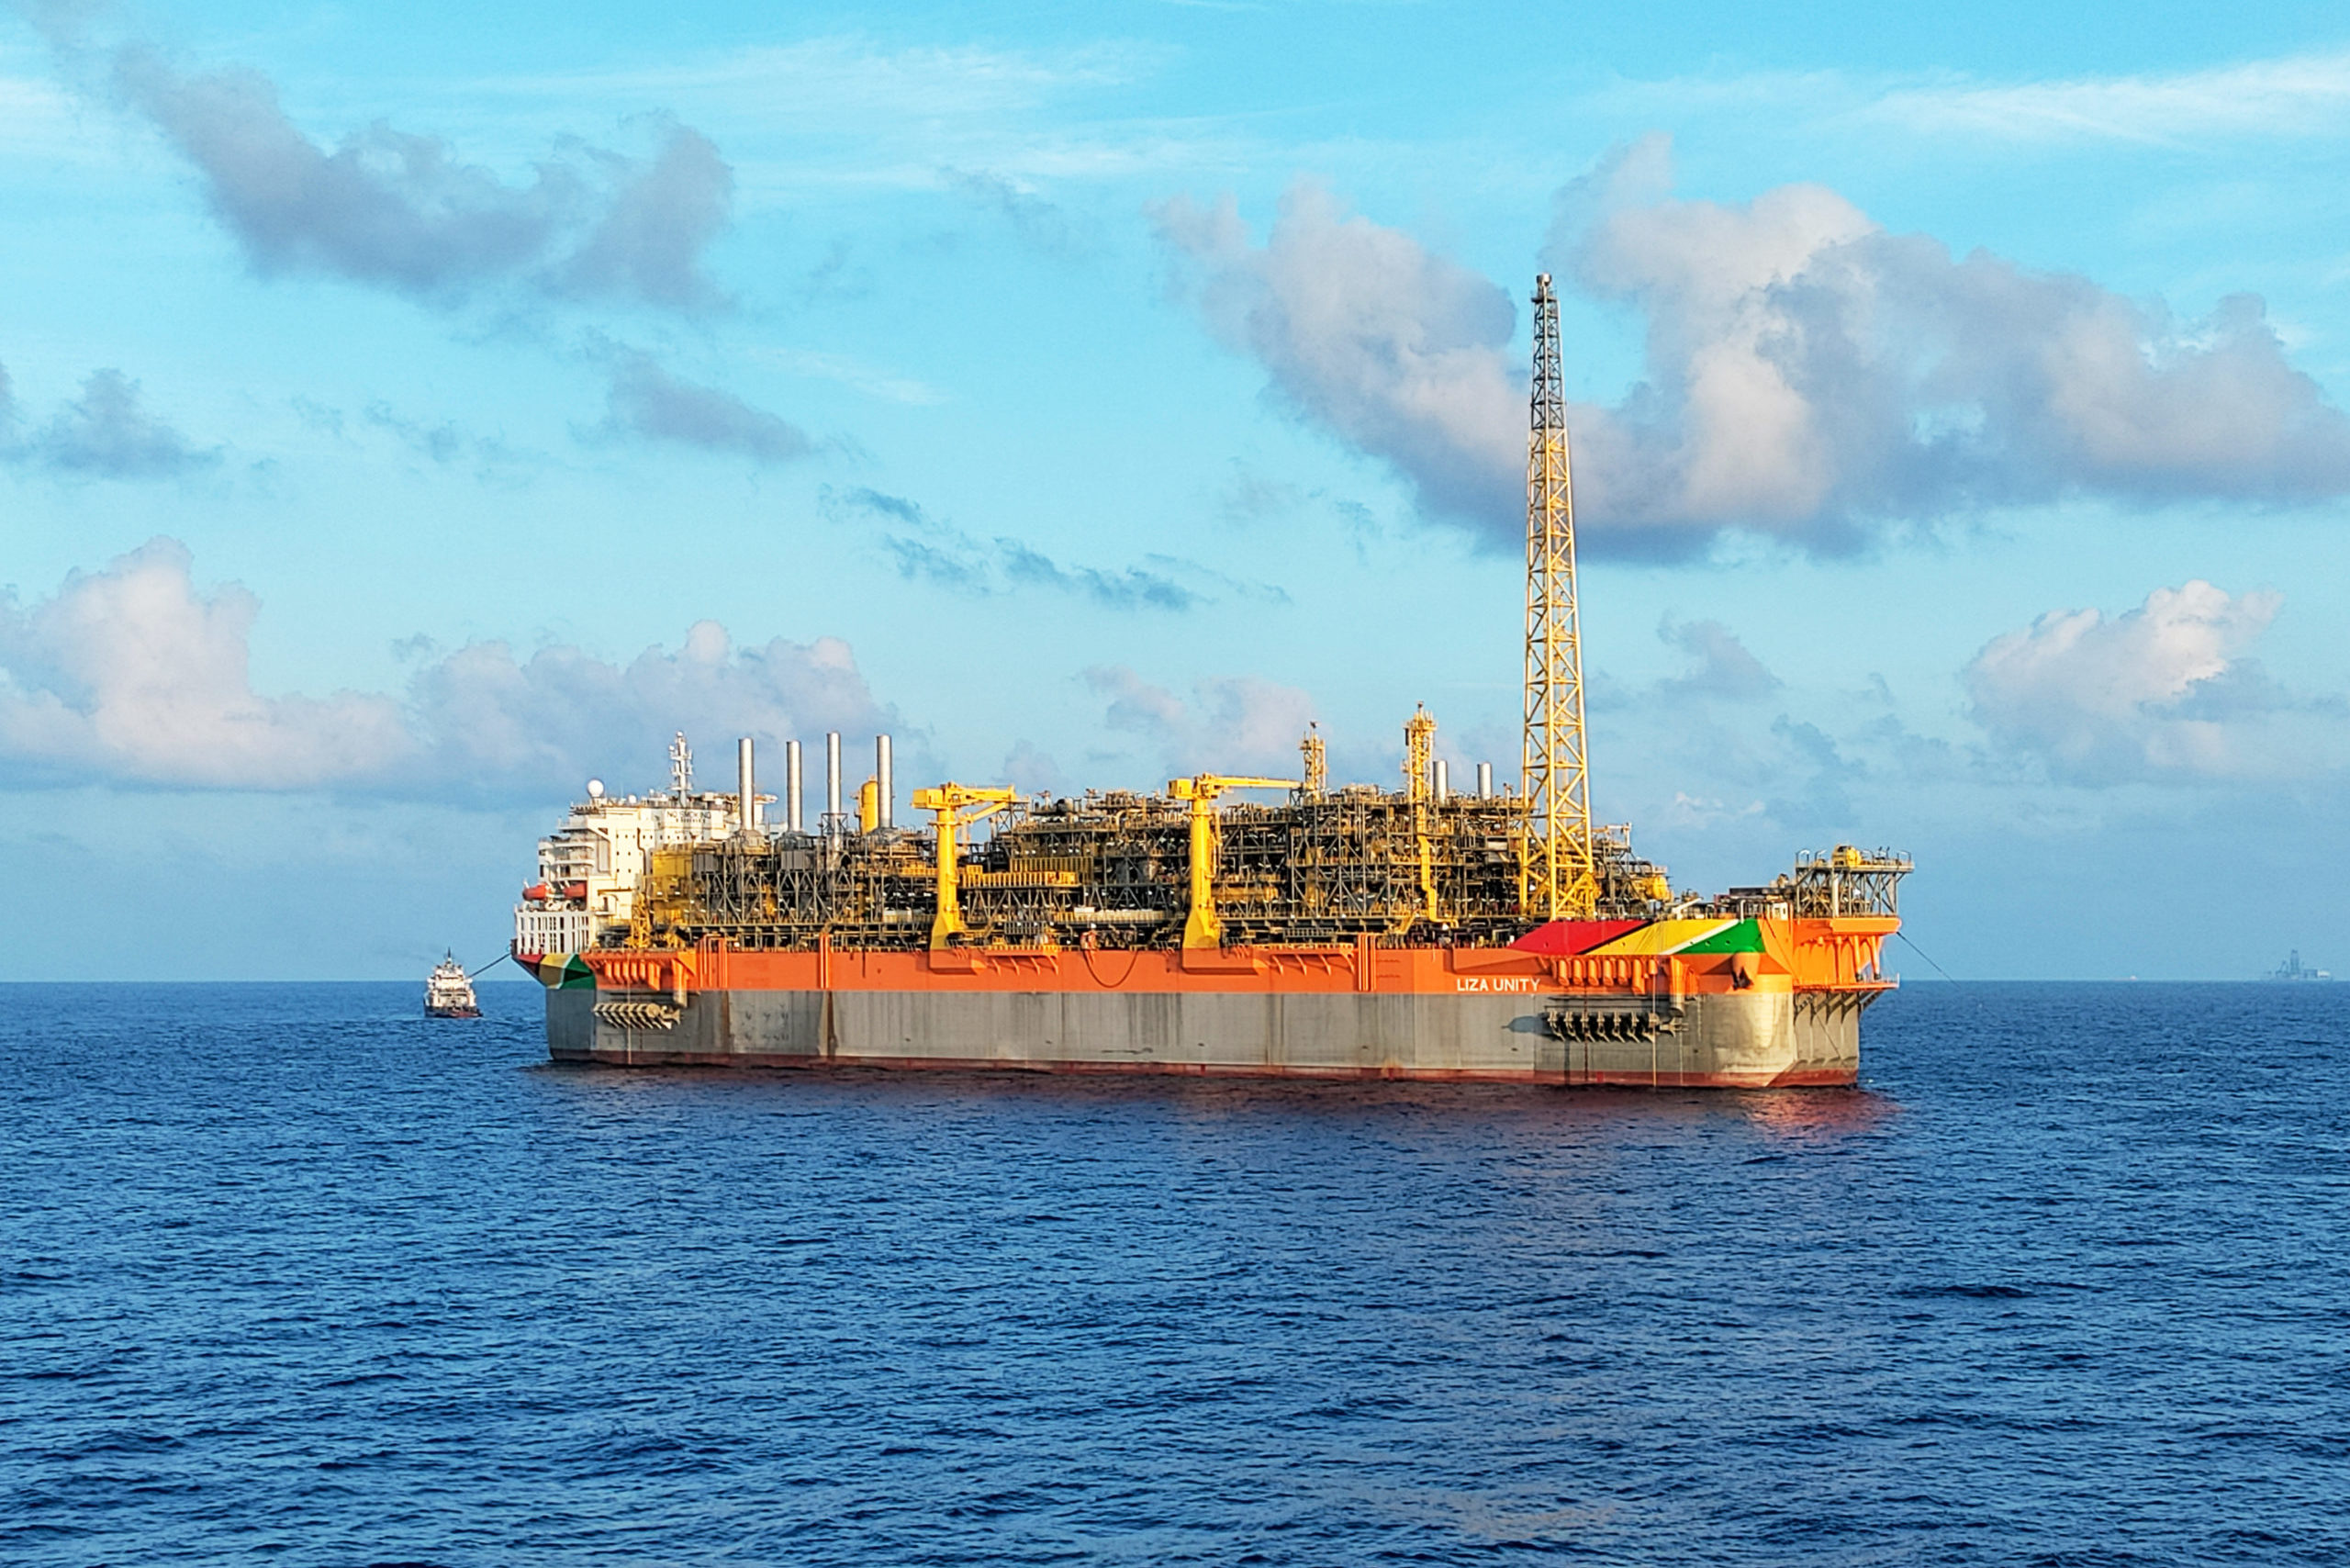 Com novas descobertas, petroleira ExxonMobil expande perfurações na Guiana. Na imagem: FPSO Liza Unity, em operação no offshore da Guiana, navega em mar azul (Foto: Divulgação SBM)